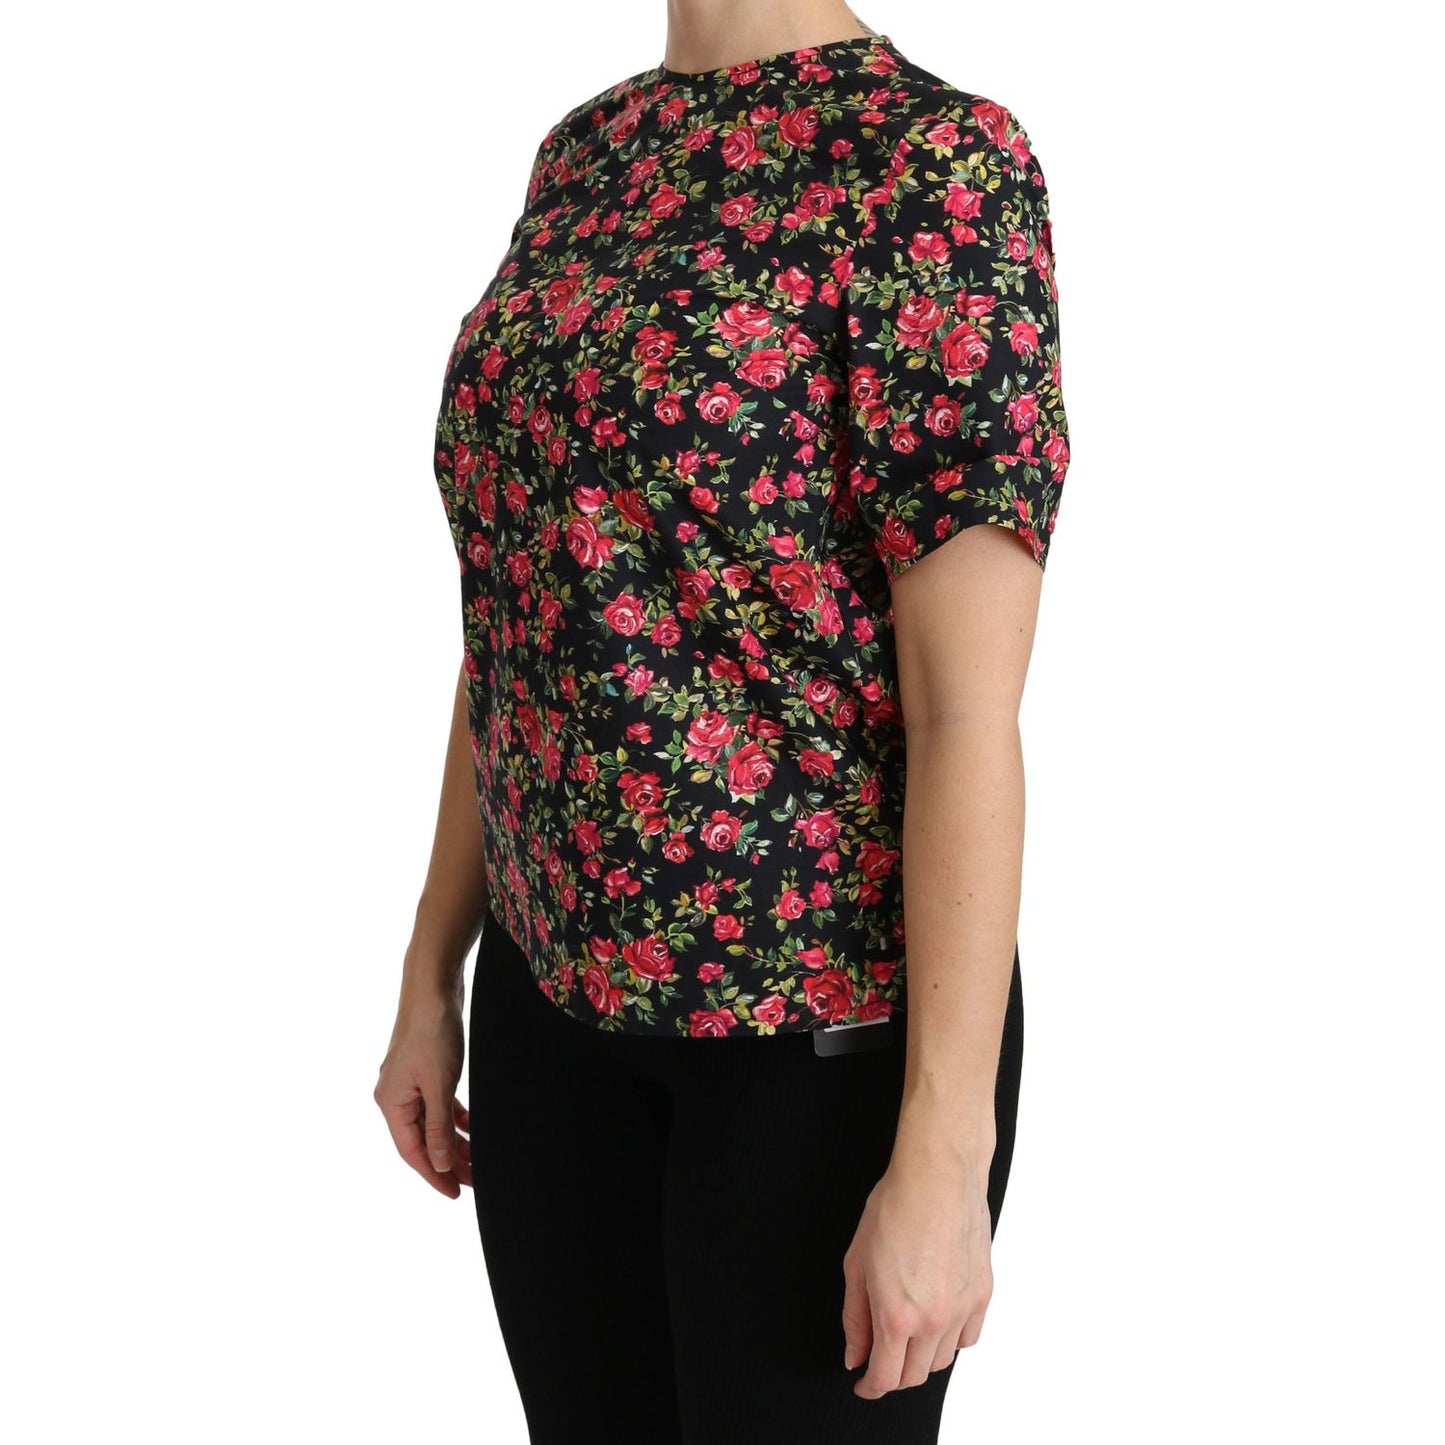 Dolce & Gabbana Elegant Black Floral Crew Neck Top black-floral-roses-short-sleeve-top-blouse